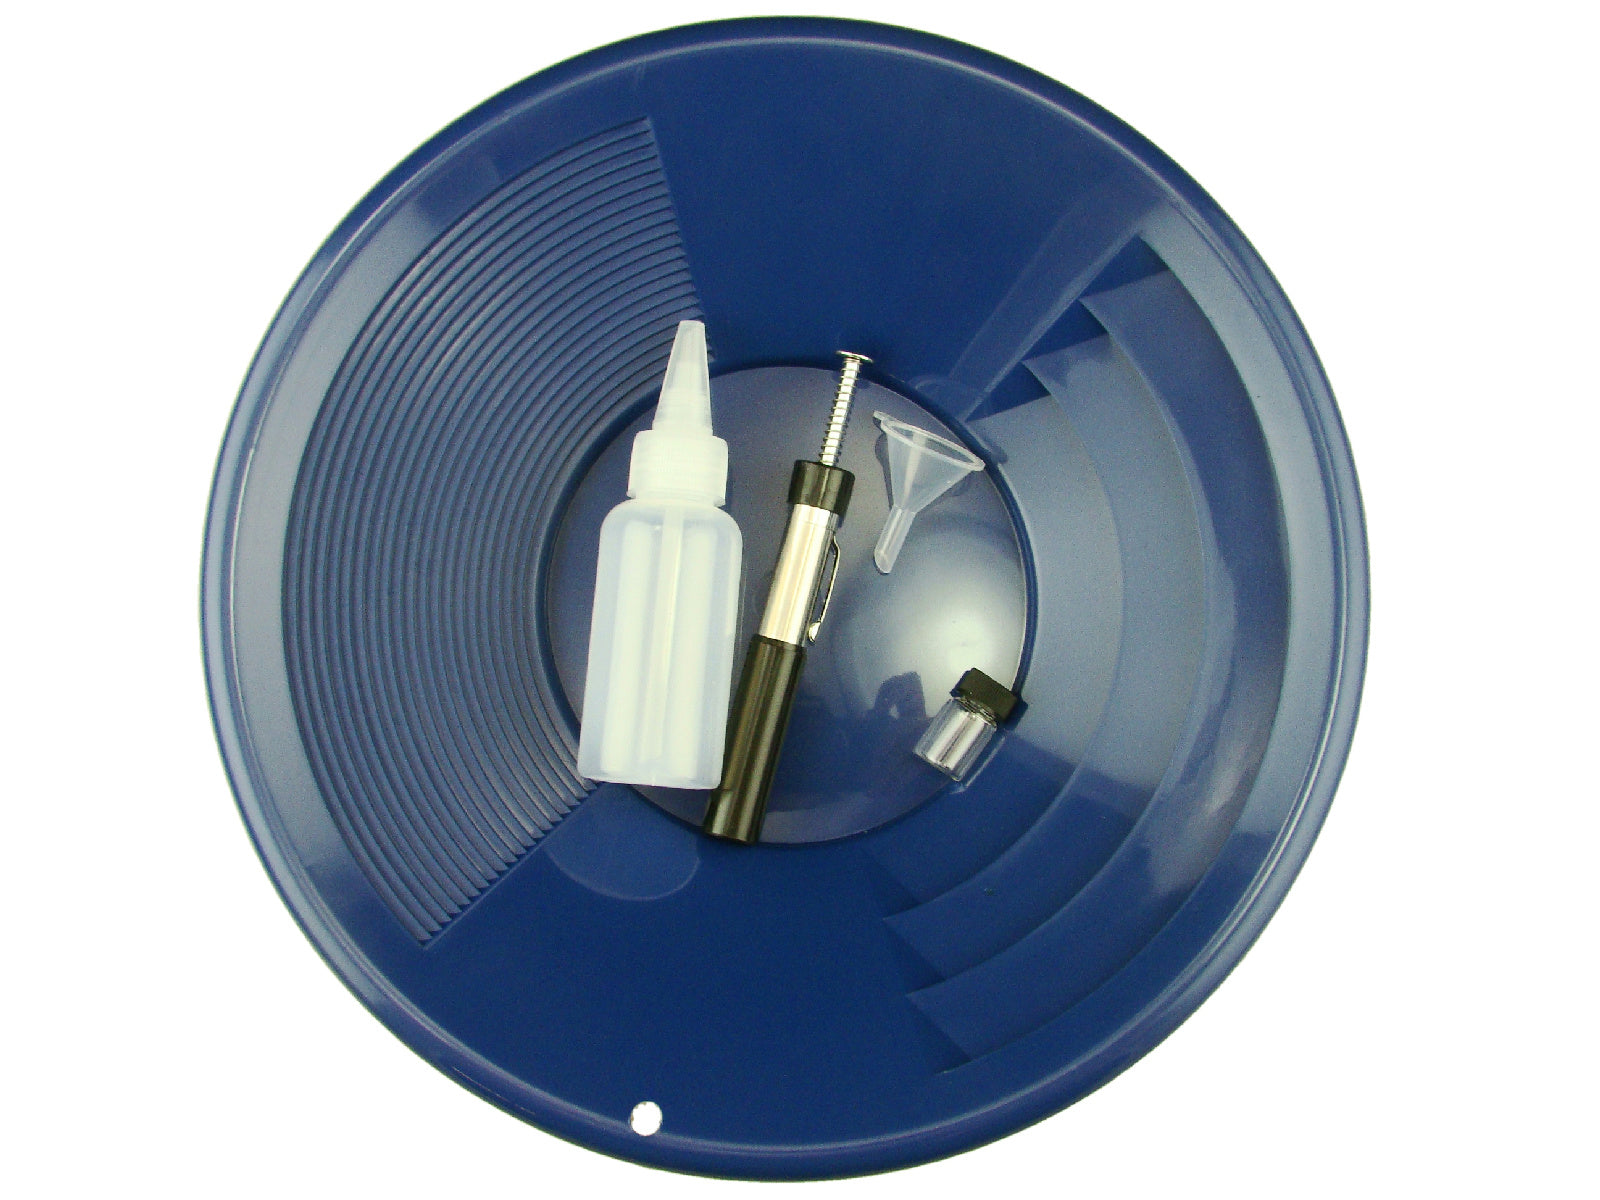 1- 12" Blue Gold Pan - 5" Snuffer Bottle - Magnet Tool - Funnel & 1" Vial